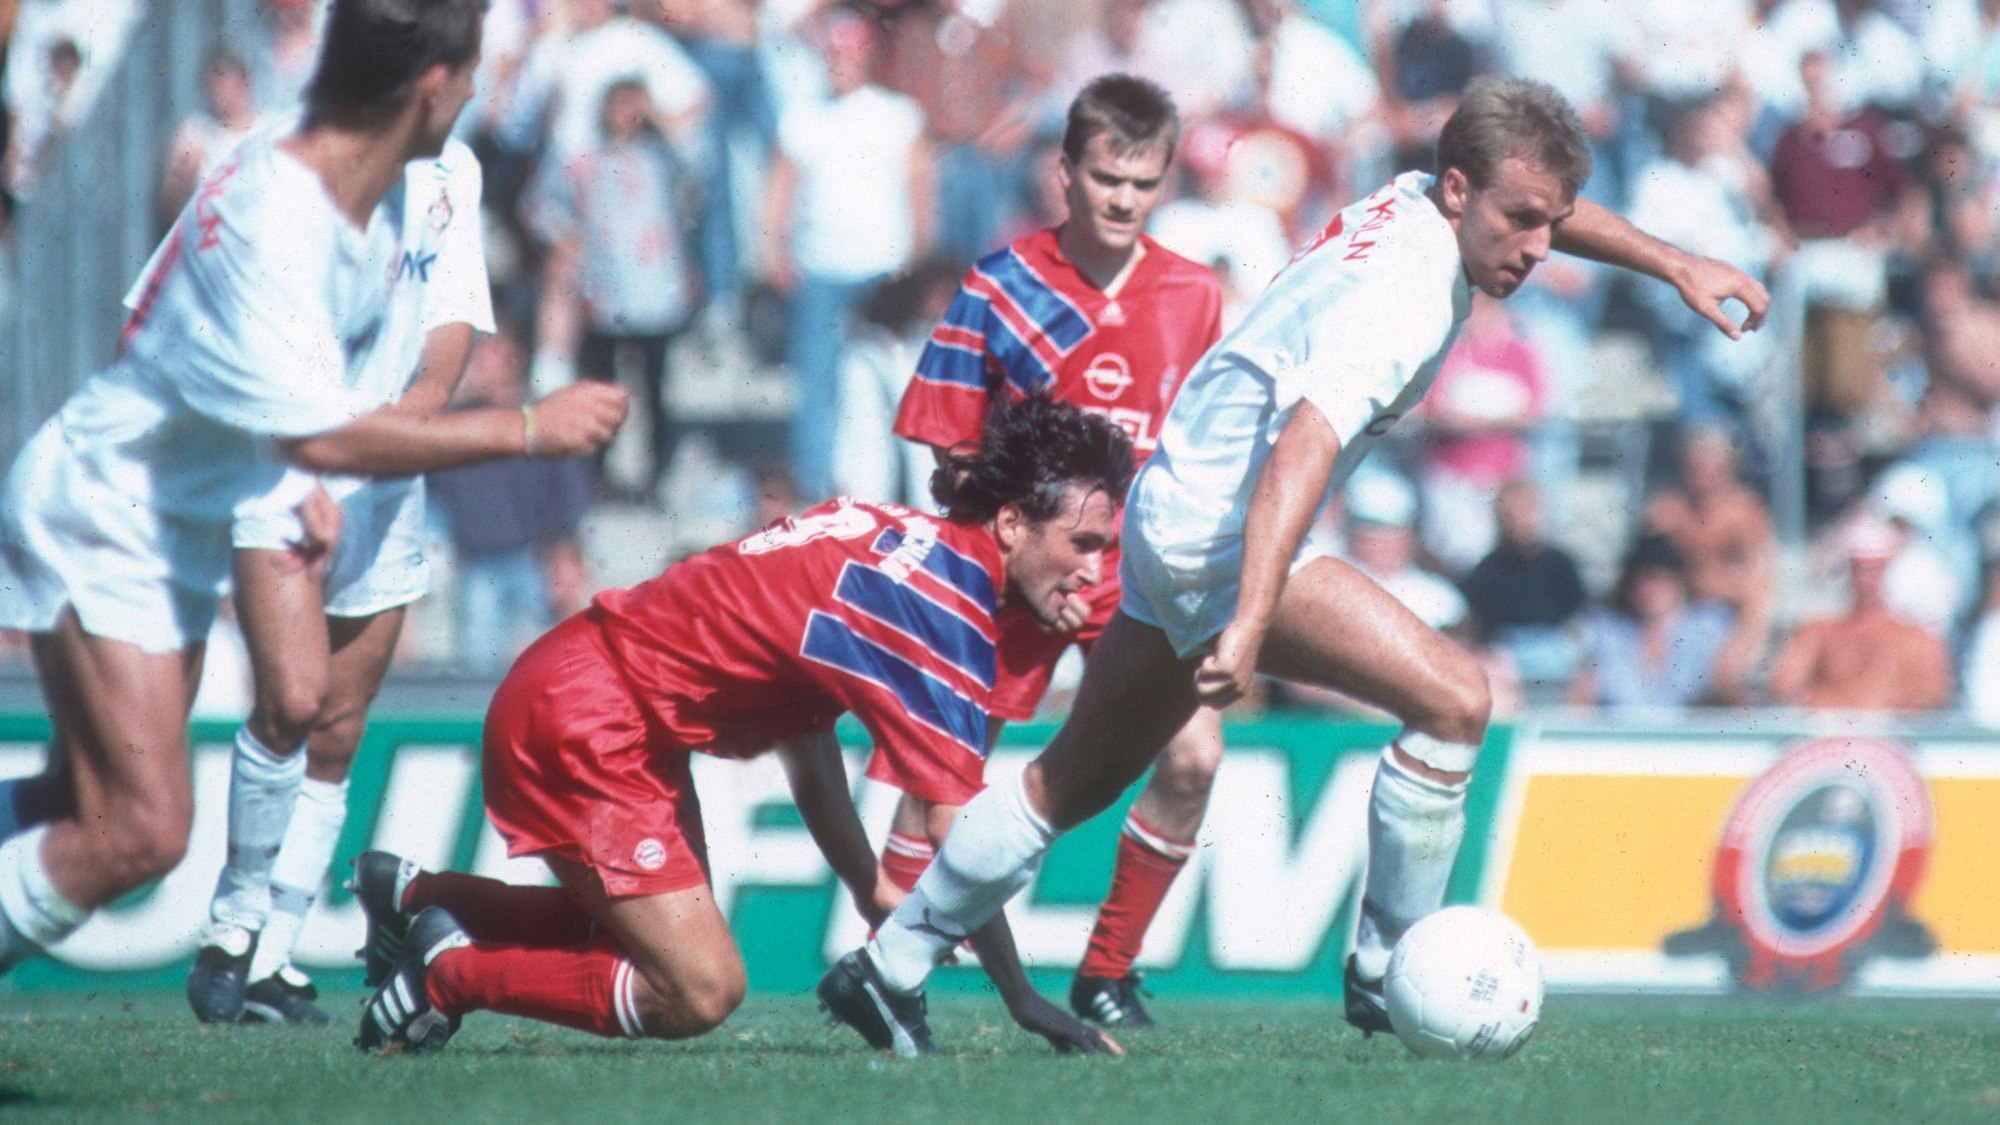 Ganz in Weiß gekleidete Spieler des 1. FC Köln kämpfen mit ihren in Rot spielenden Gegnern vom FC Bayern München um den Ball.